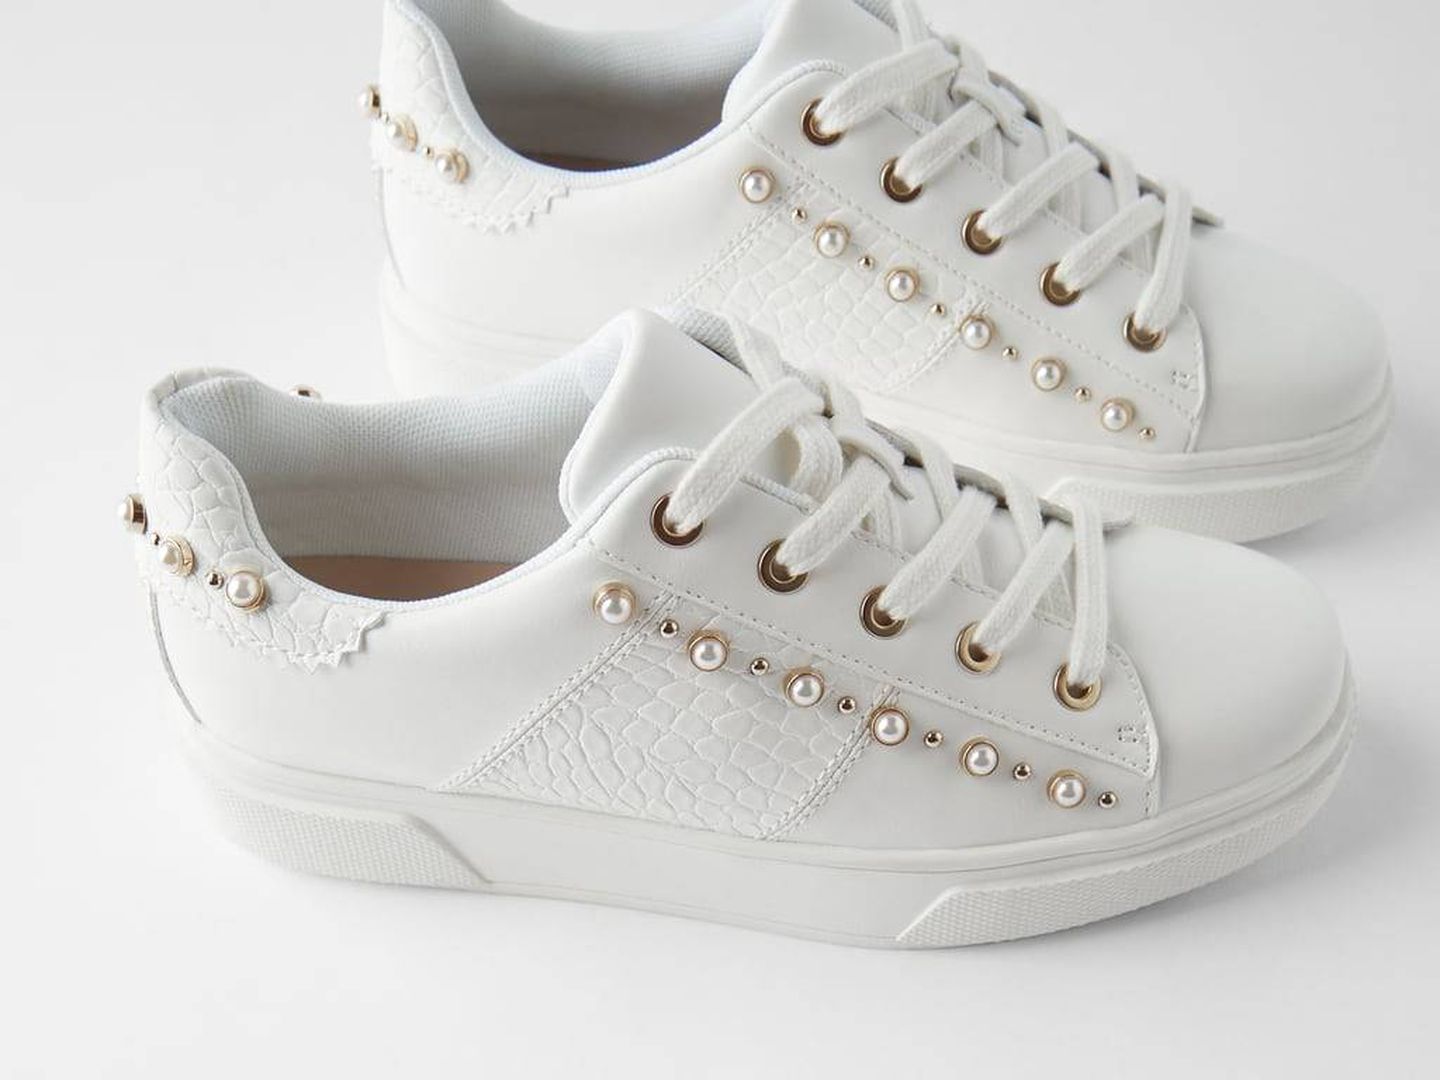 Las zapatillas deportivas blancas de Zara. (Cortesía)